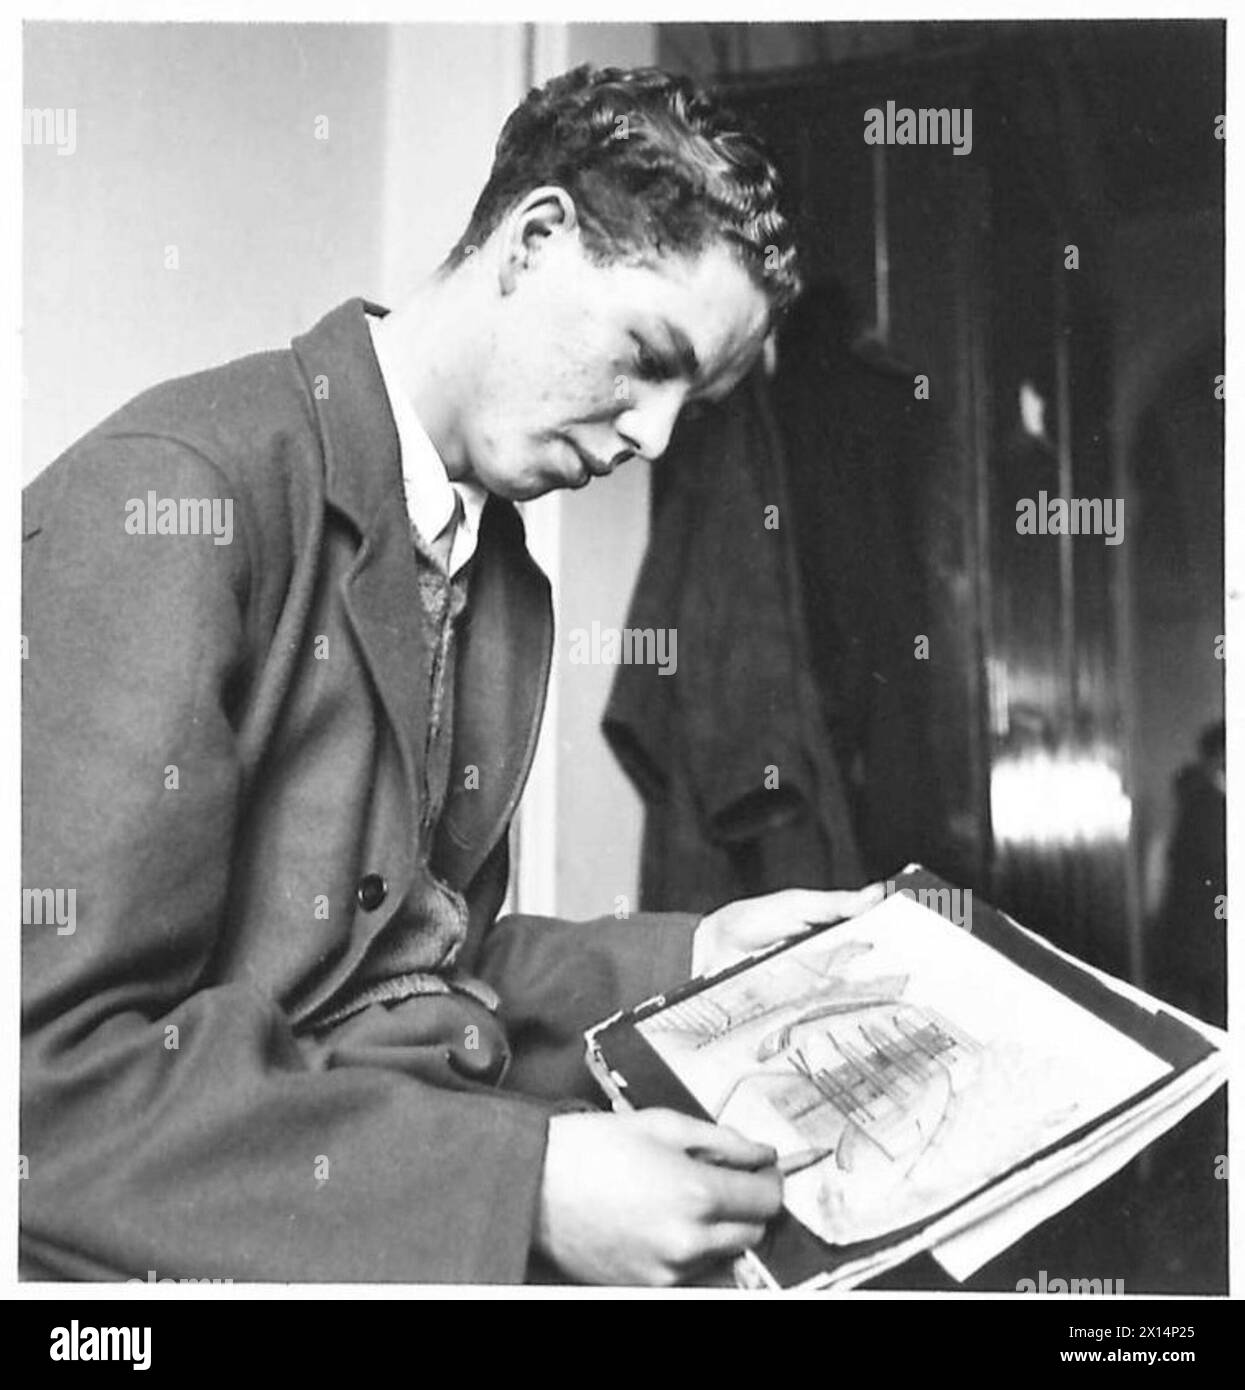 KRANKENHAUSPERSONAL UND PAITENTS MACHEN WEIHNACHTSGESCHENKE - Corporal L. Hardwick, R.A.F., beschäftigt bei einer Zeichnung. Seit seiner Zeit als Patient im Krankenhaus British Army wurde ihm Zeichnen beigebracht Stockfoto